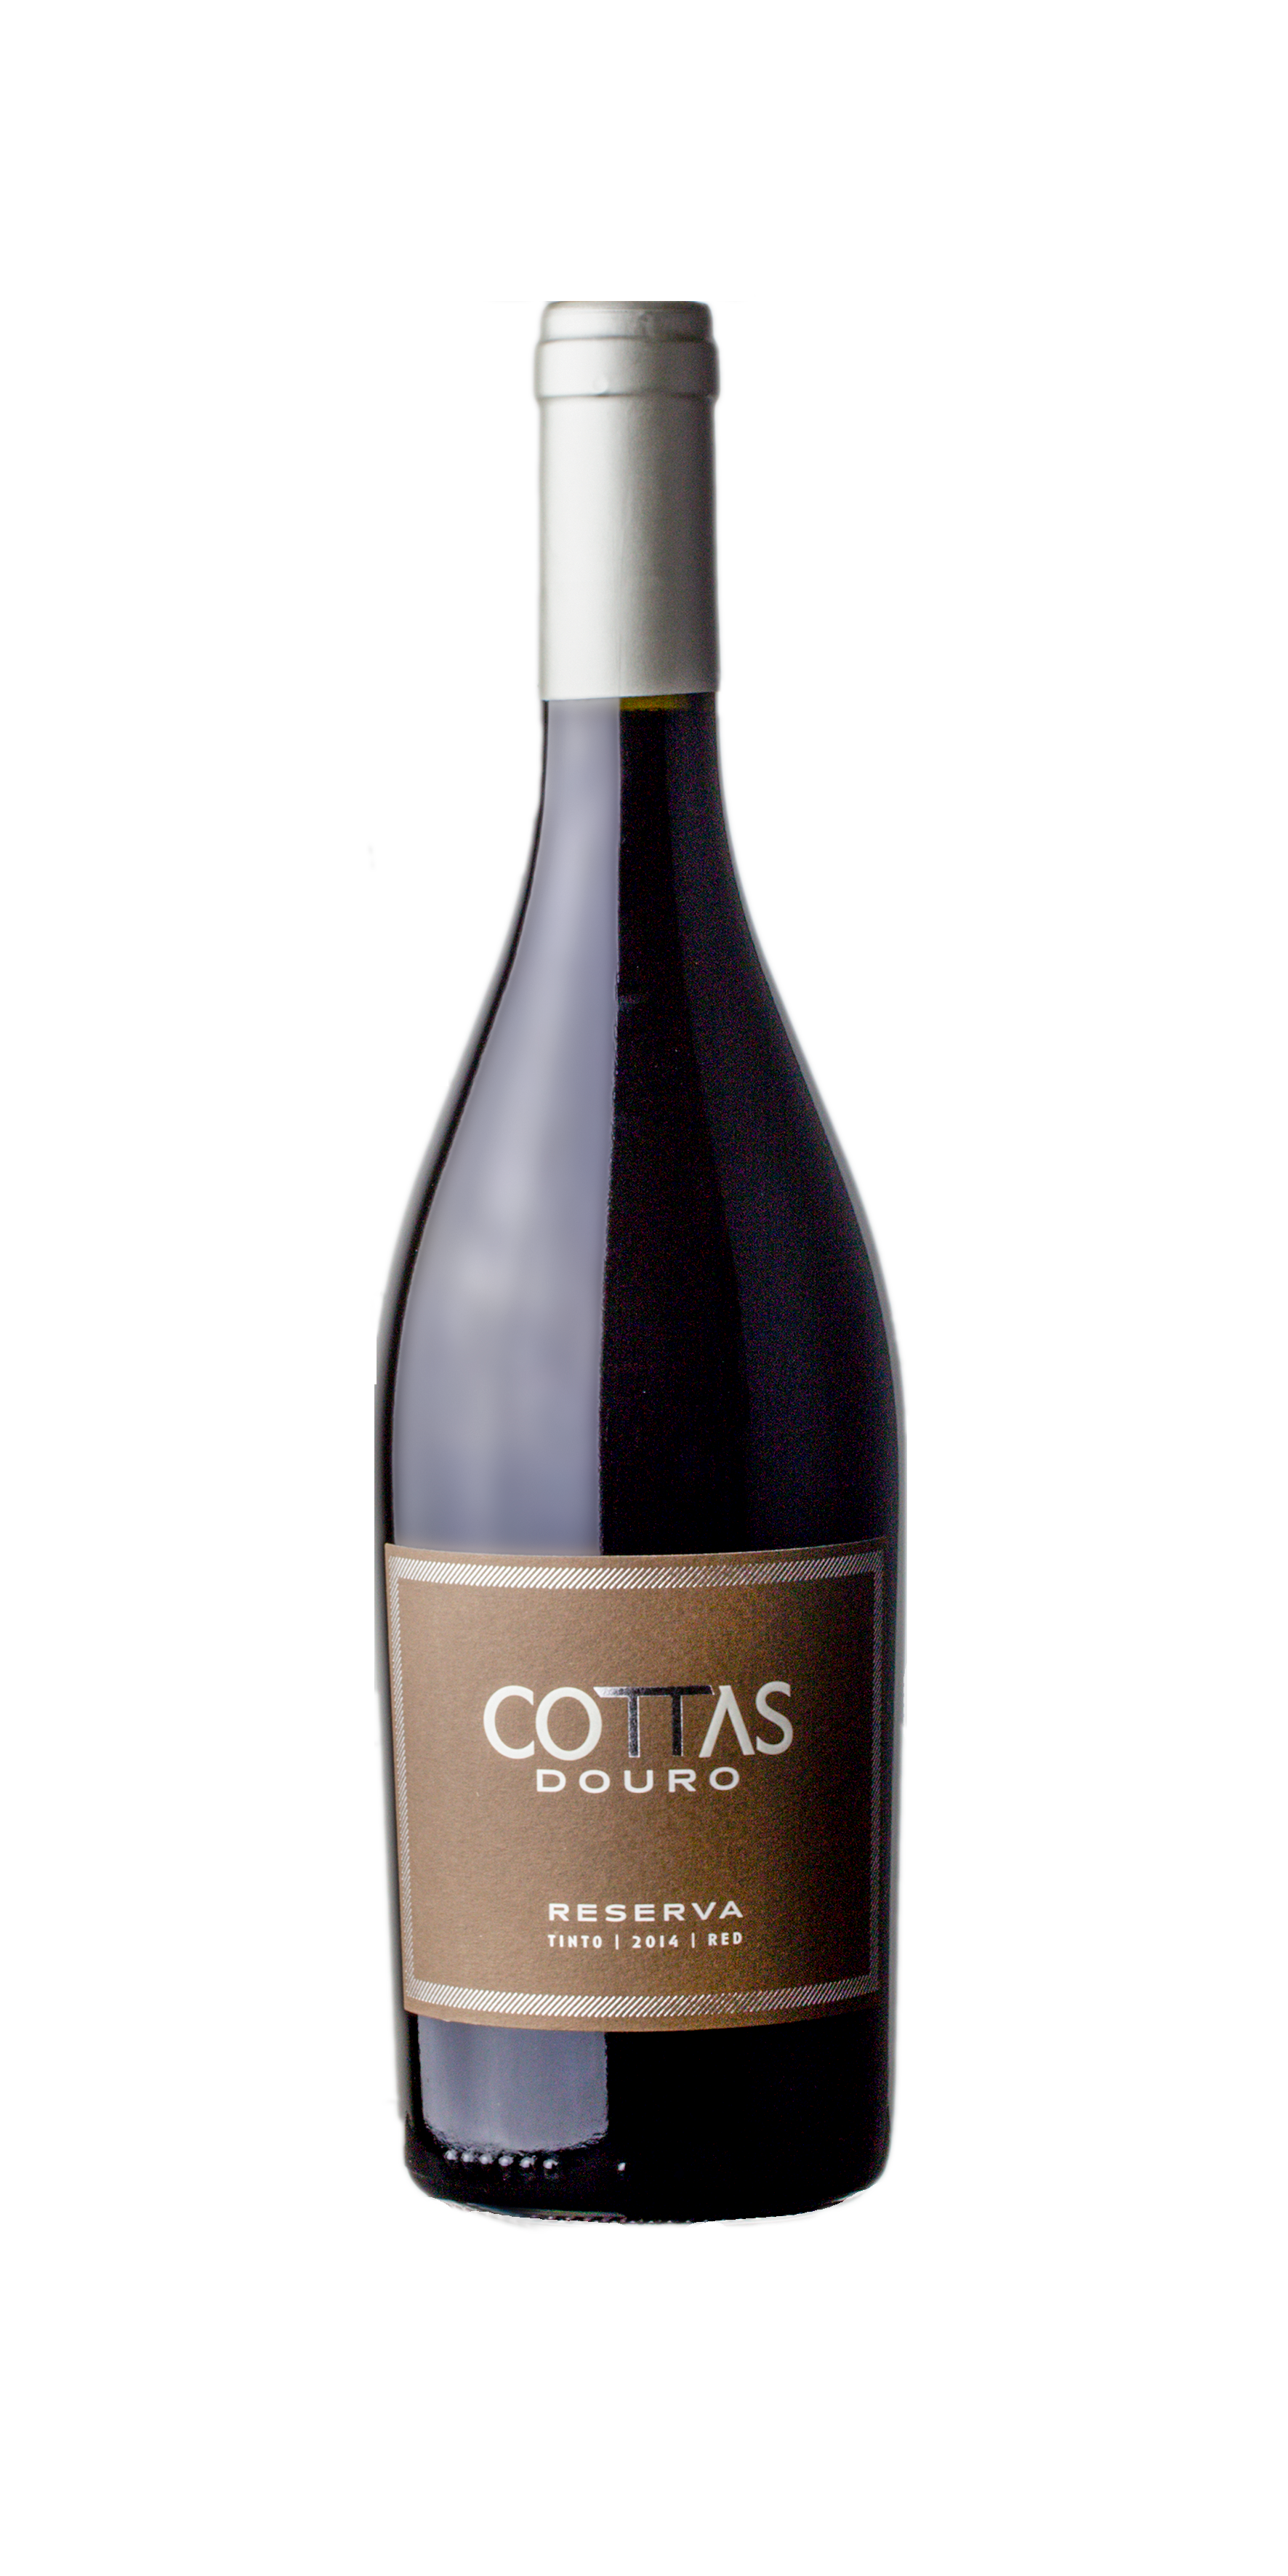 Cottas Reserva 2019 (25,33€ / litro)